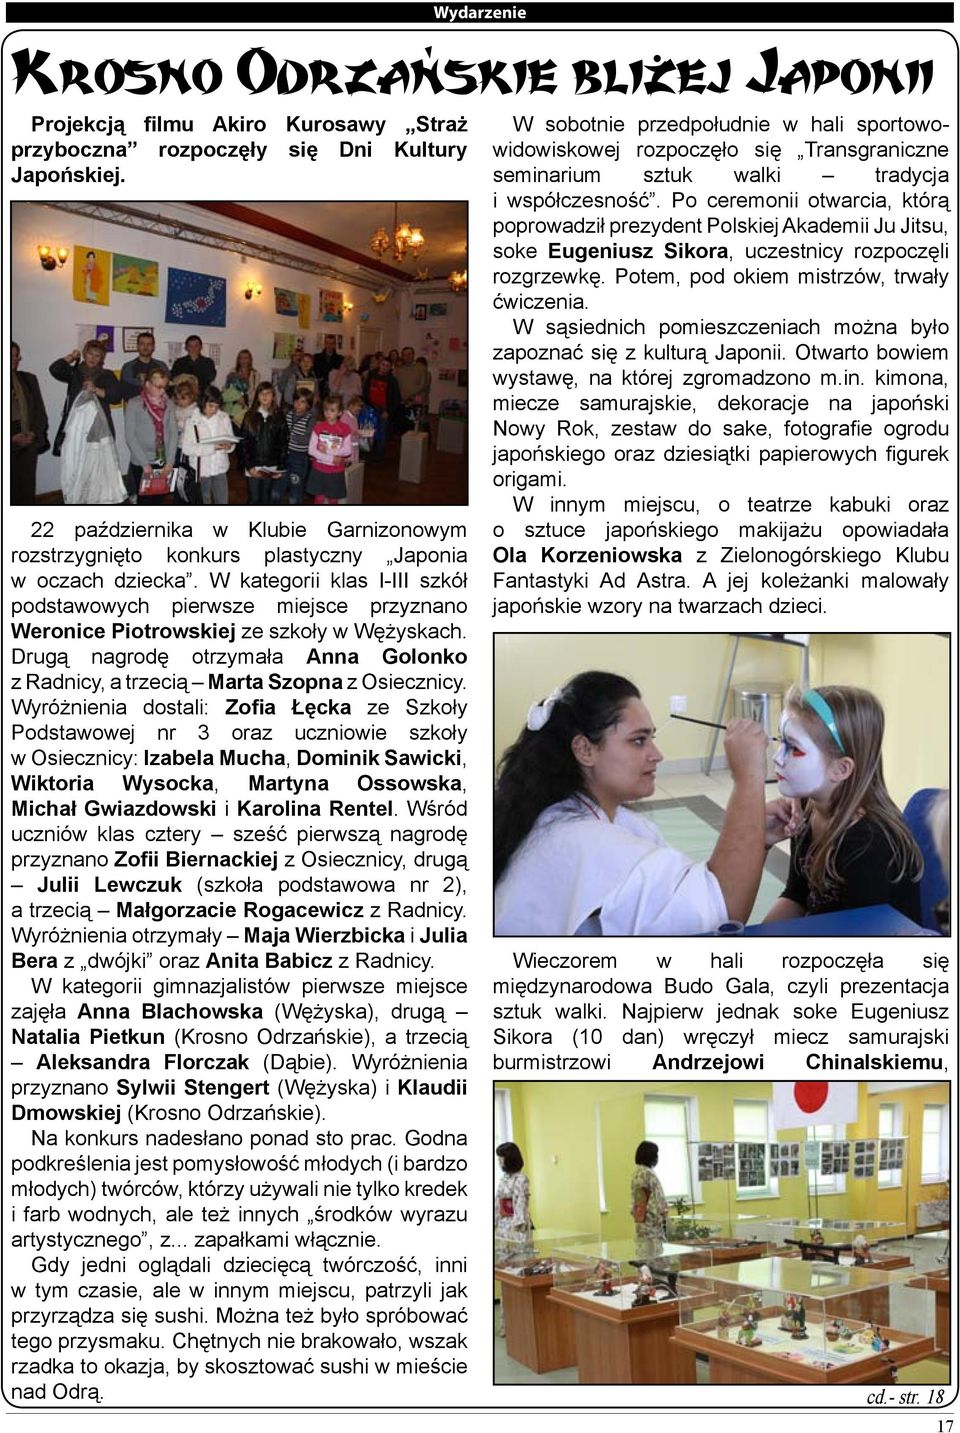 W kategorii klas I-III szkół podstawowych pierwsze miejsce przyznano Weronice Piotrowskiej ze szkoły w Wężyskach. Drugą nagrodę otrzymała Anna Golonko z Radnicy, a trzecią Marta Szopna z Osiecznicy.